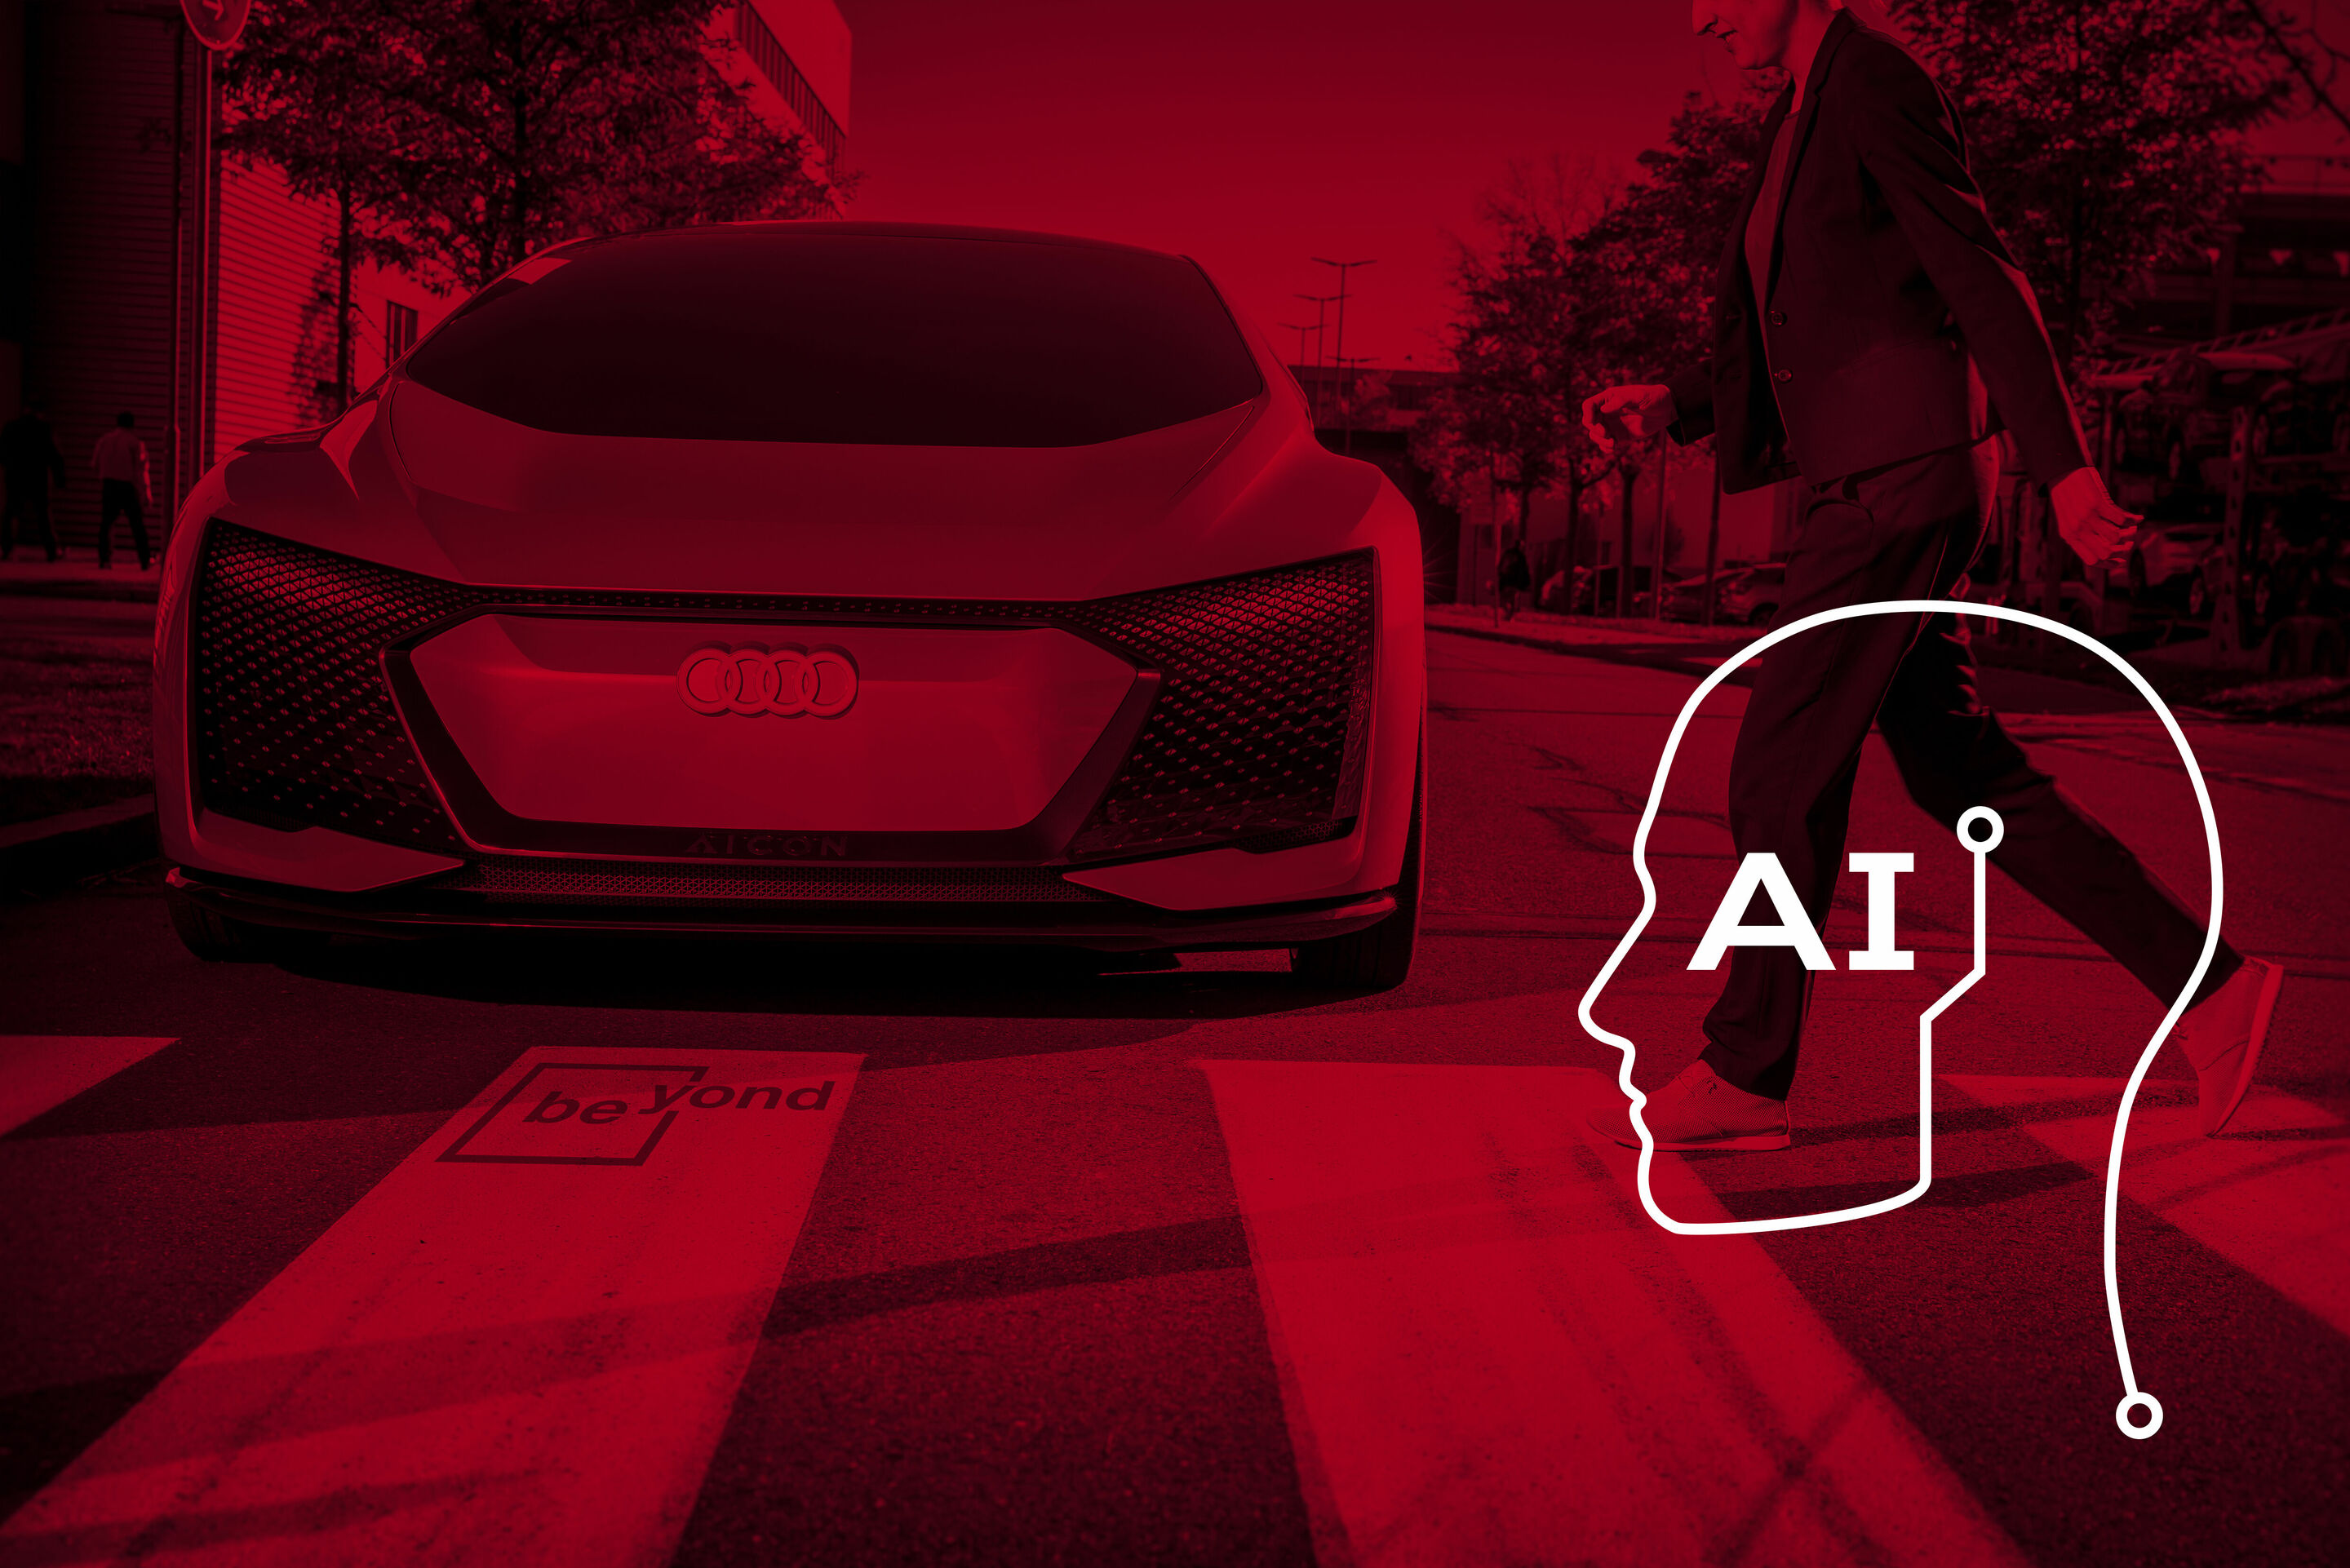 Audi und beyond-Initiative setzen sich in globalem Forum für verantwortungsvollen Umgang mit KI ein